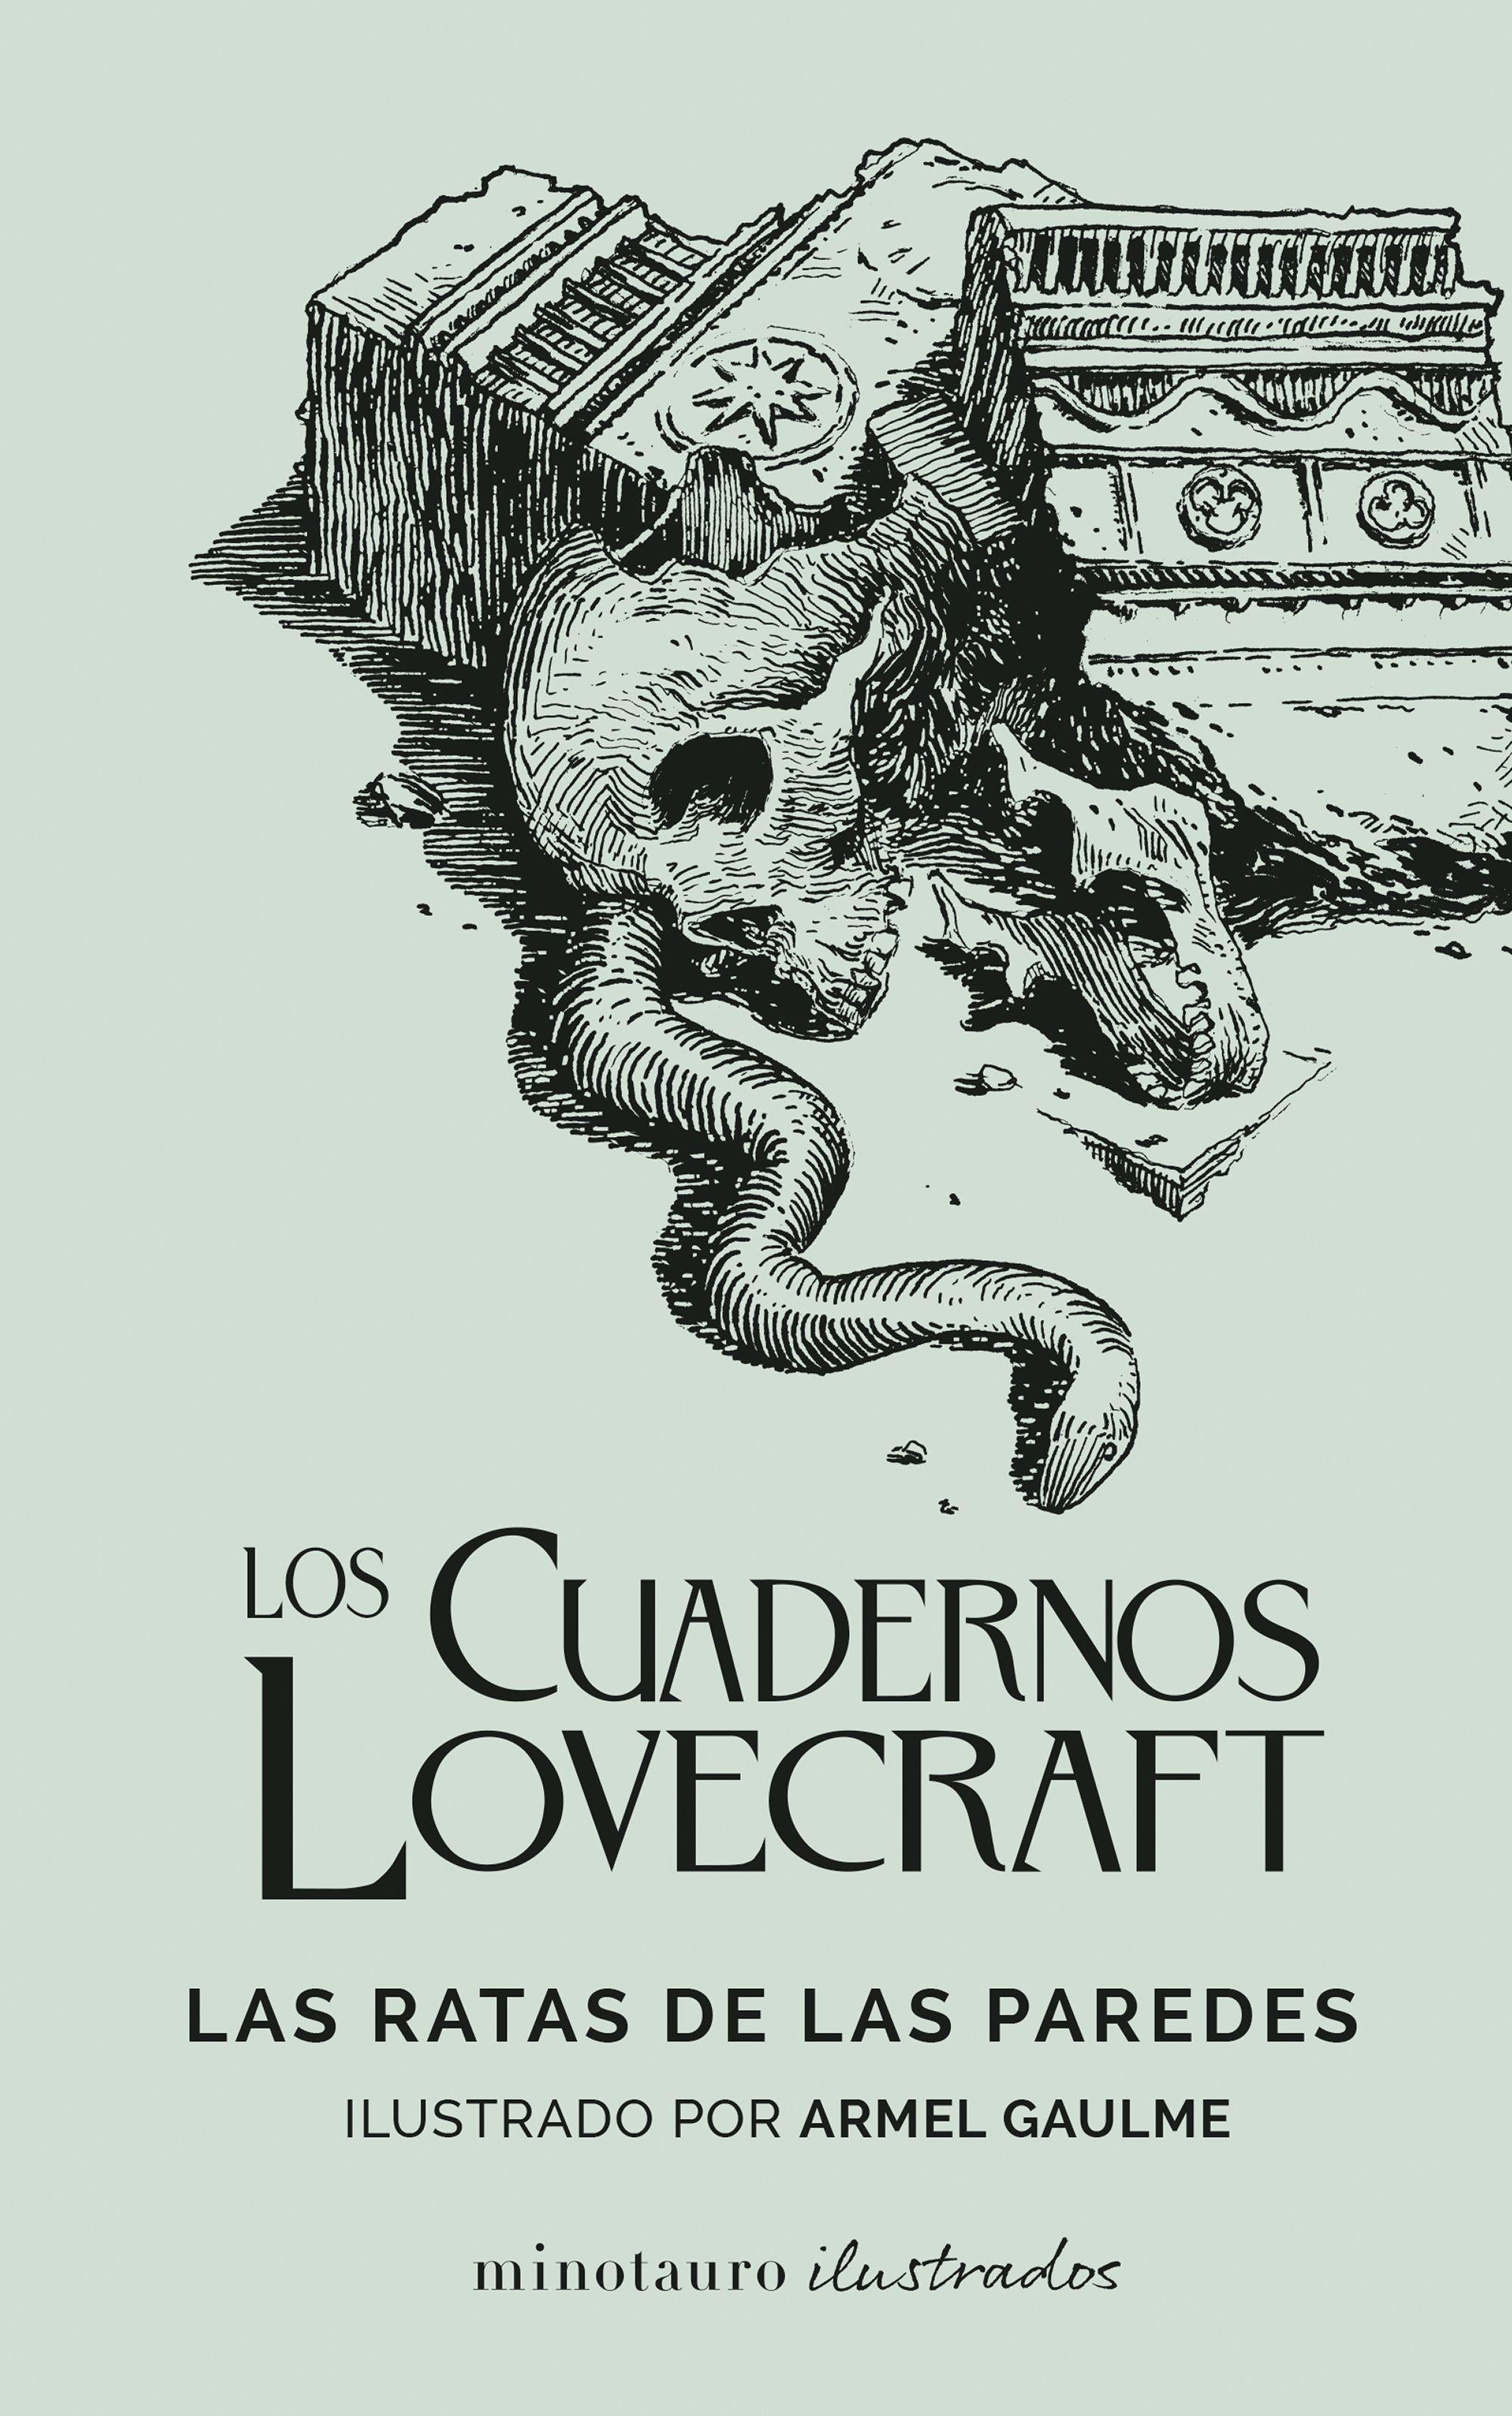 Cuadernos Lovecraft, Los. Las ratas de las paredes